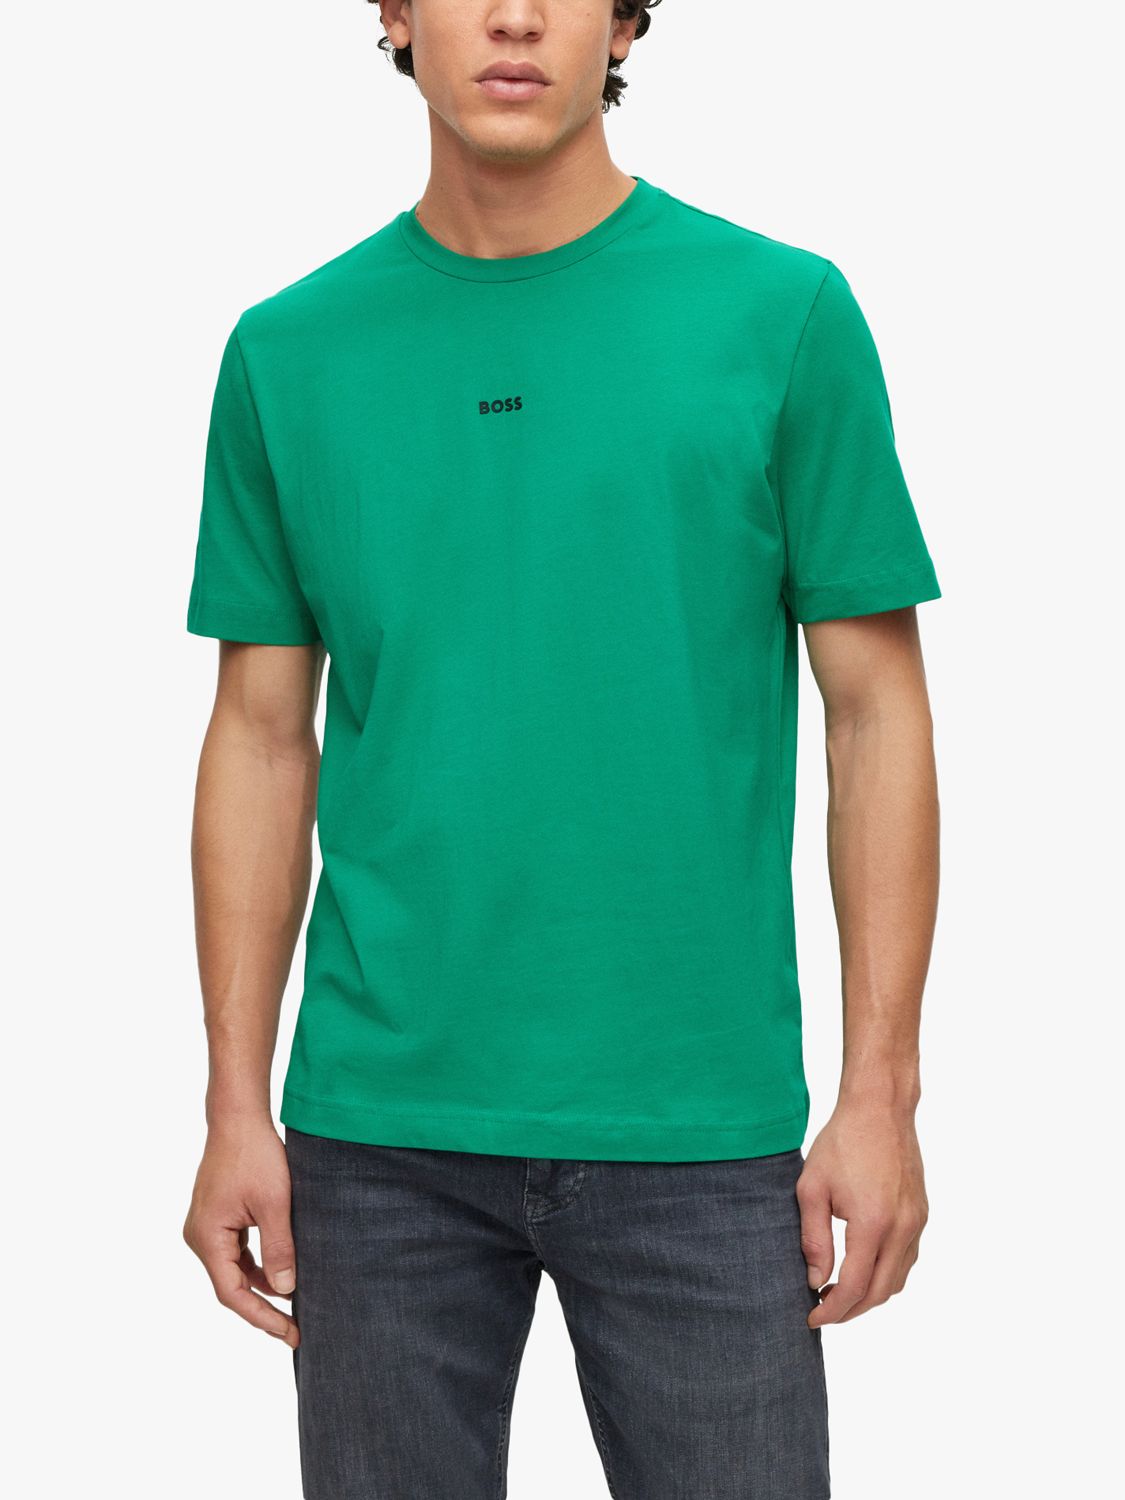 BOSS TChup T-Shirt, Medium Green, S